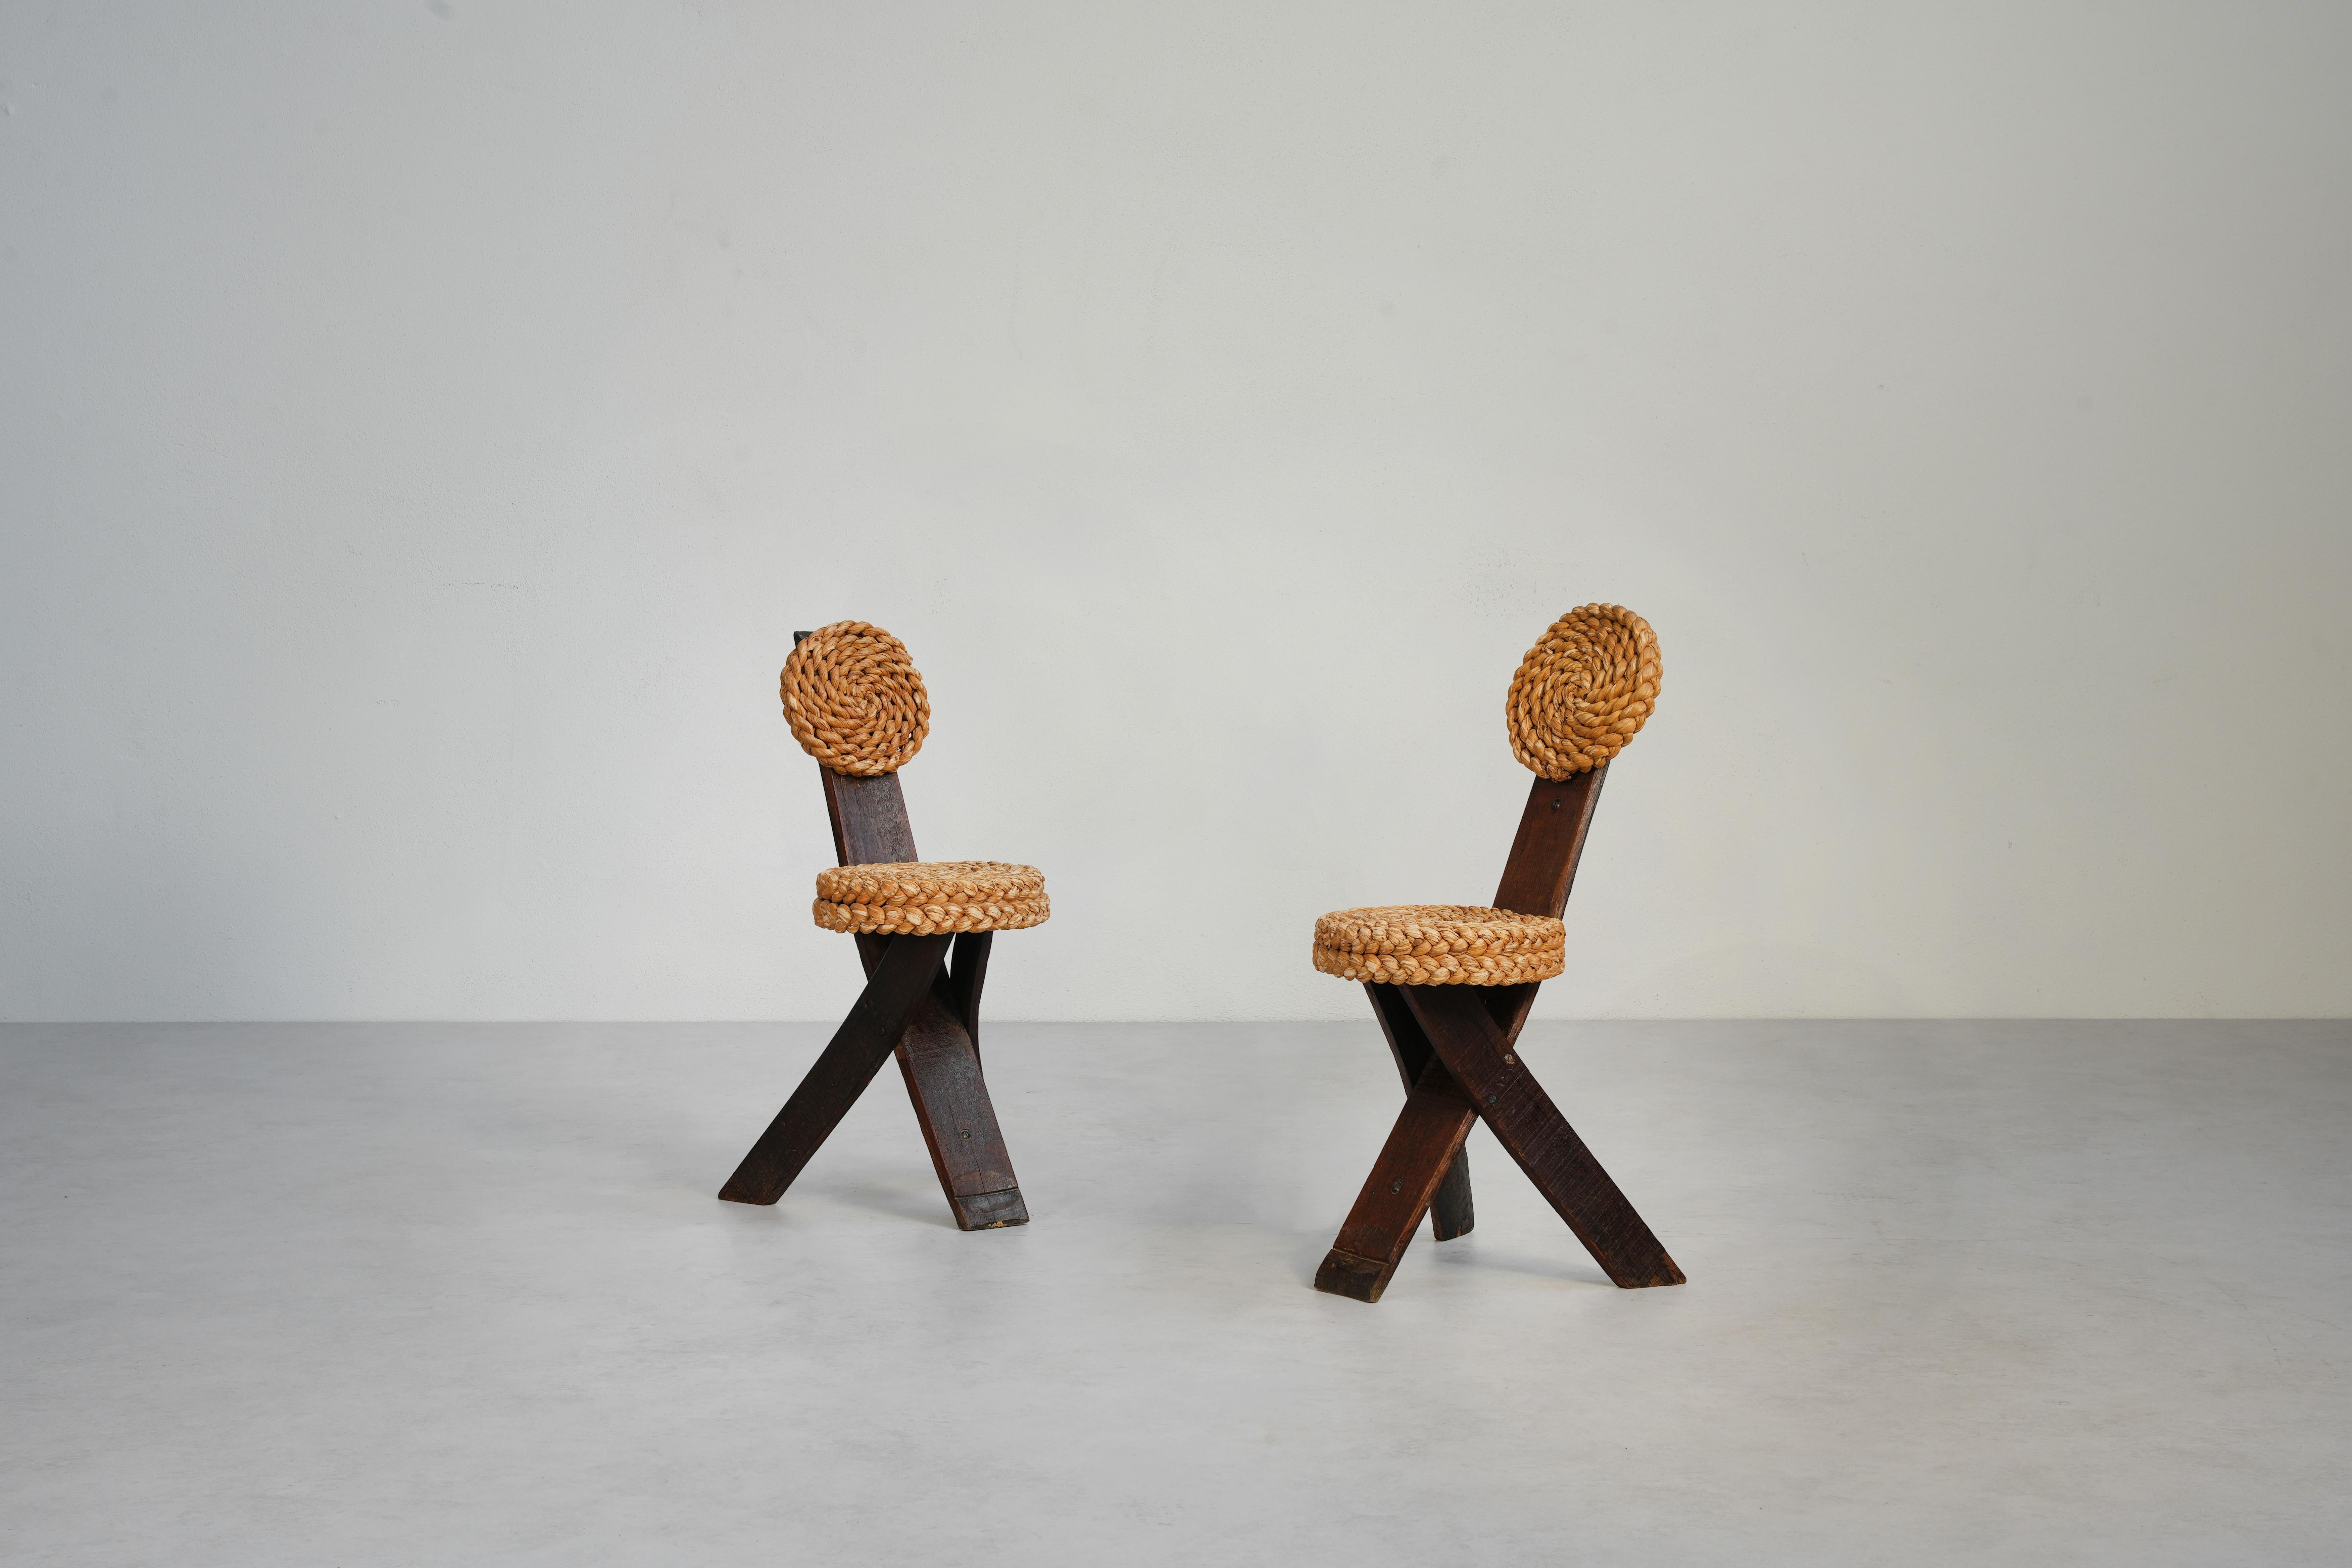 Absolut atemberaubende Stühle aus Seil und Holz, entworfen von Frida Minet und Adrien Audoux, aus dem Frankreich der 1950er Jahre. Diese unverwechselbaren, künstlerischen Stühle sind die Quintessenz der modernistischen Formgebung von Audoux et